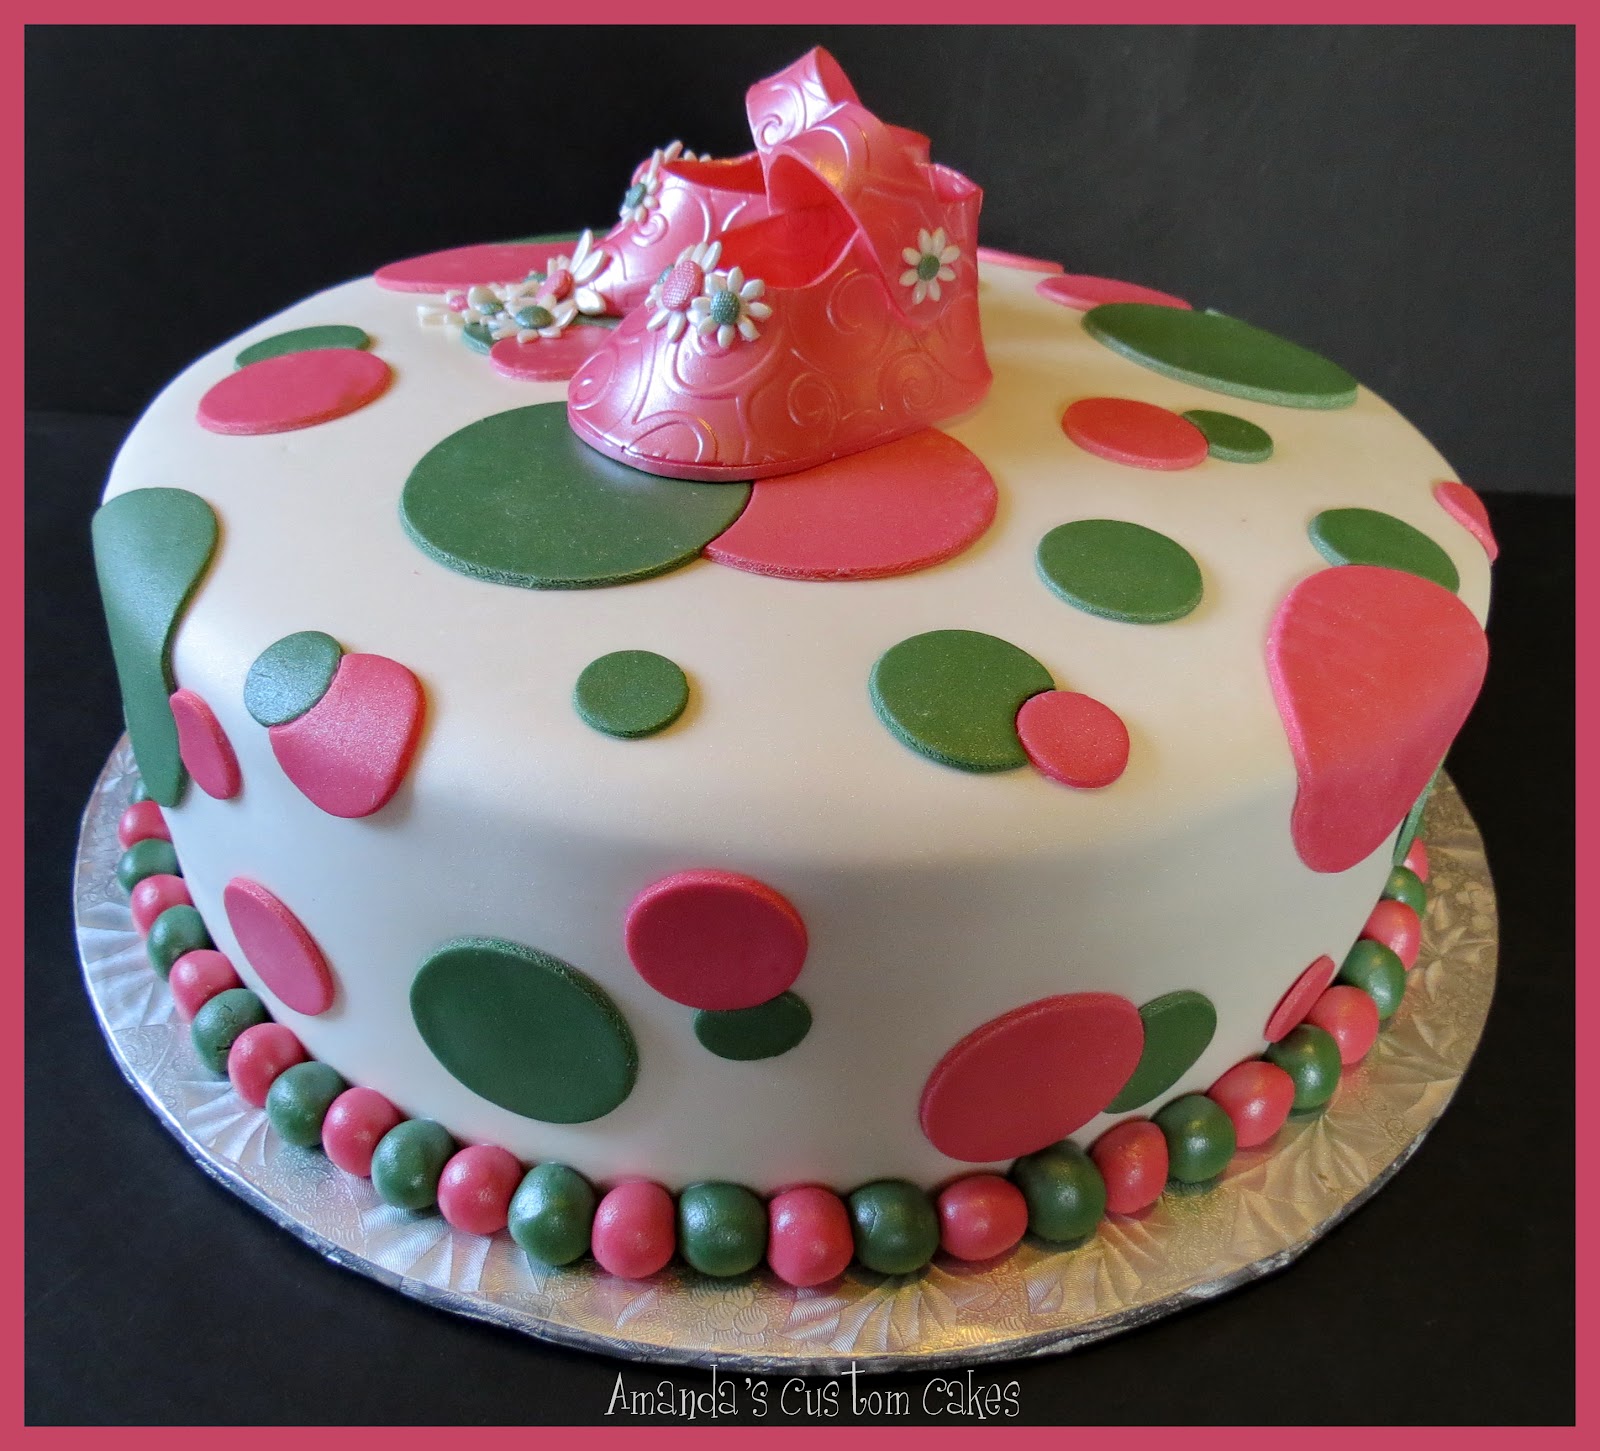 Amanda's Custom Cakes: Baby Shower Cake